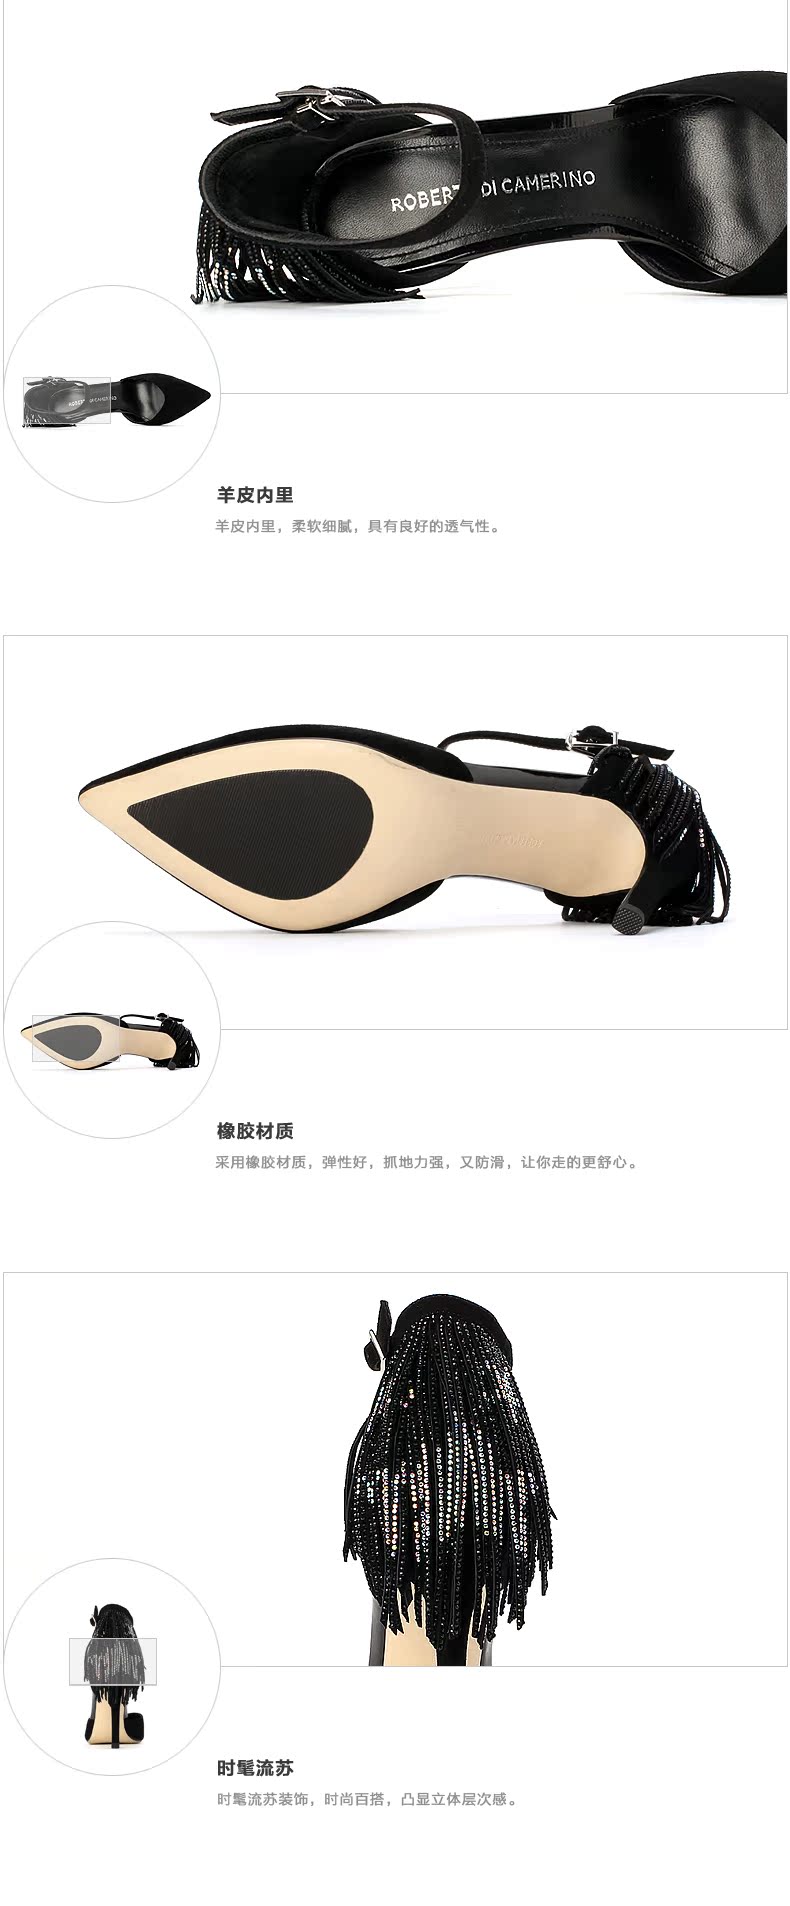 普拉達筷子 roberta諾貝達女鞋夏季流蘇水鉆細高跟涼鞋女RM67202 普拉達帽子